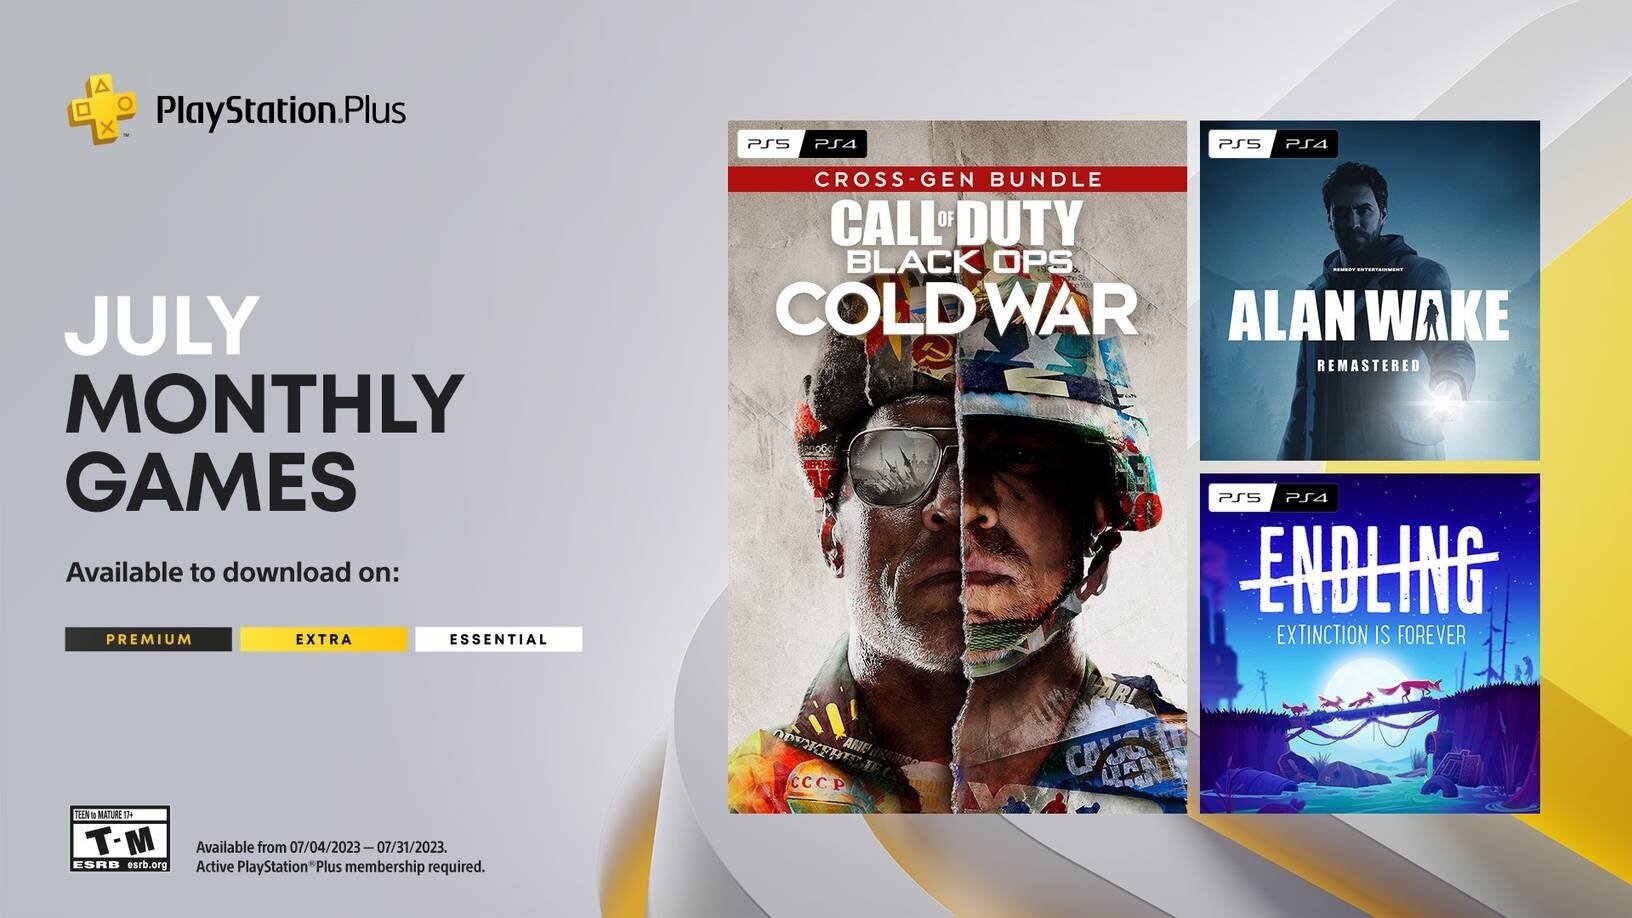 Τα δωρεάν παιχνίδια του PlayStation Plus για τον Ιούλιο περιλαμβάνουν τα 'CoD: Black Ops Cold War' και 'Alan Wake Remastered'